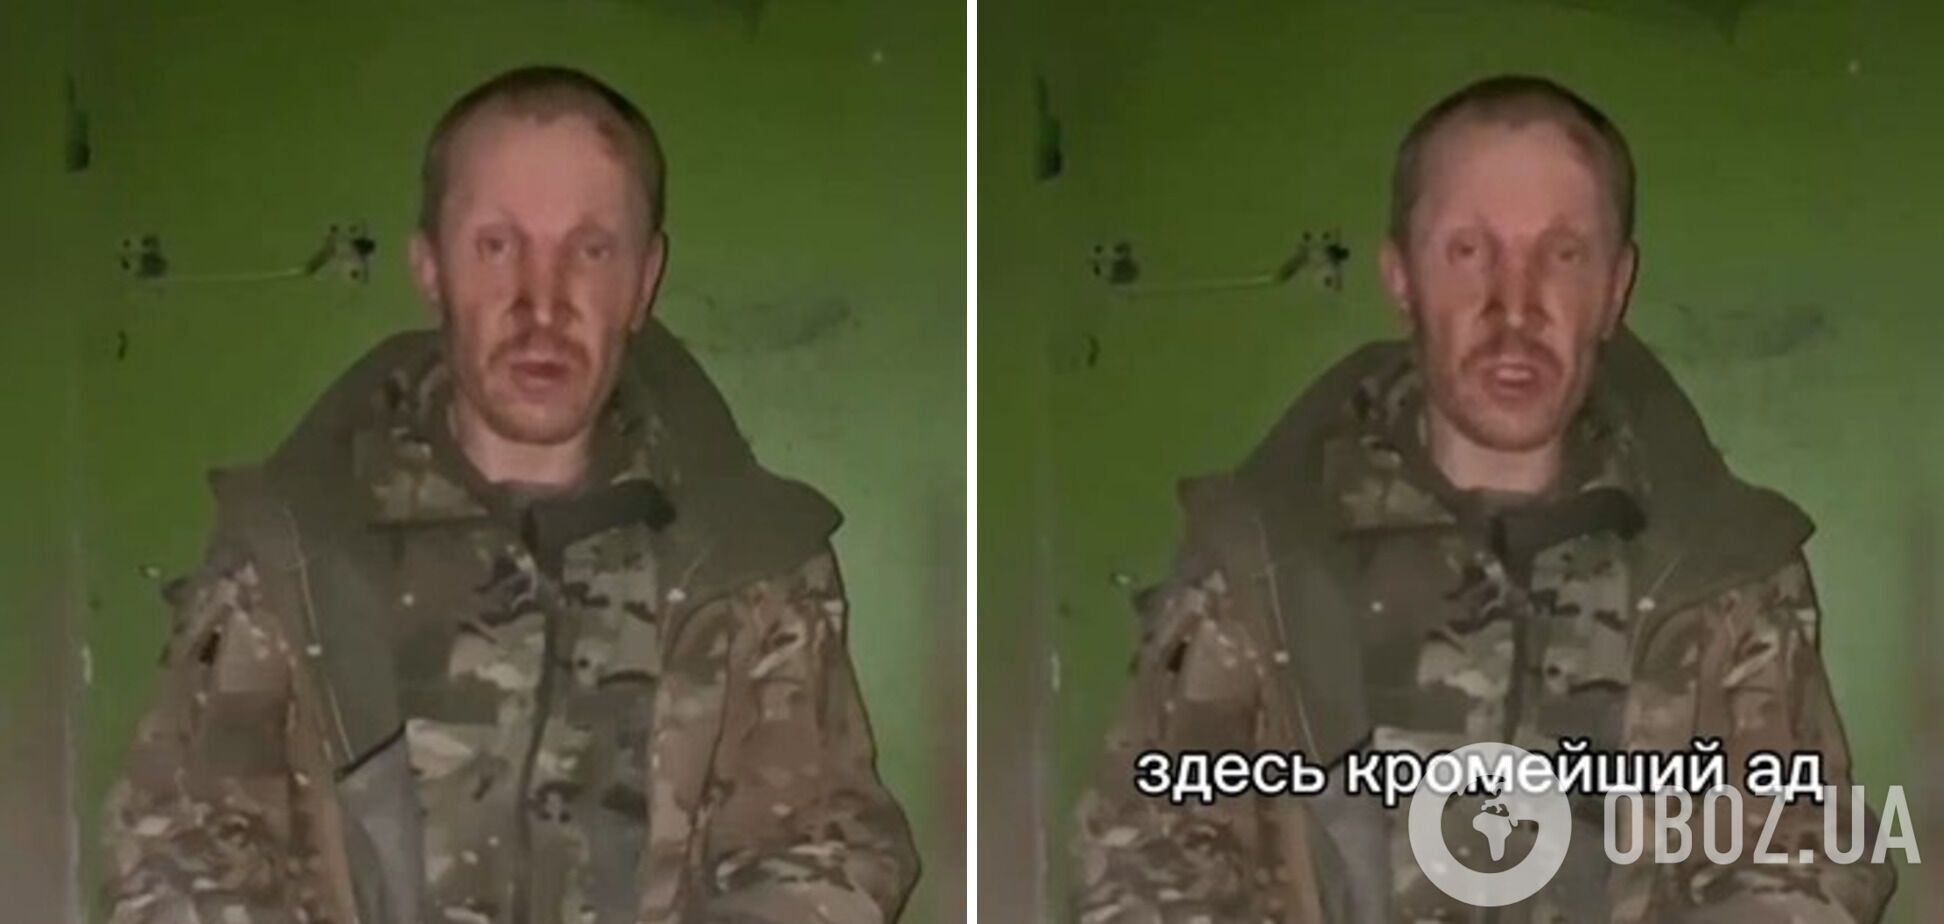 'Размахивал пистолетом': оккупант пожаловался, что российский офицер убил 'мобика', и рассказал о нехватке медикаментов. Видео